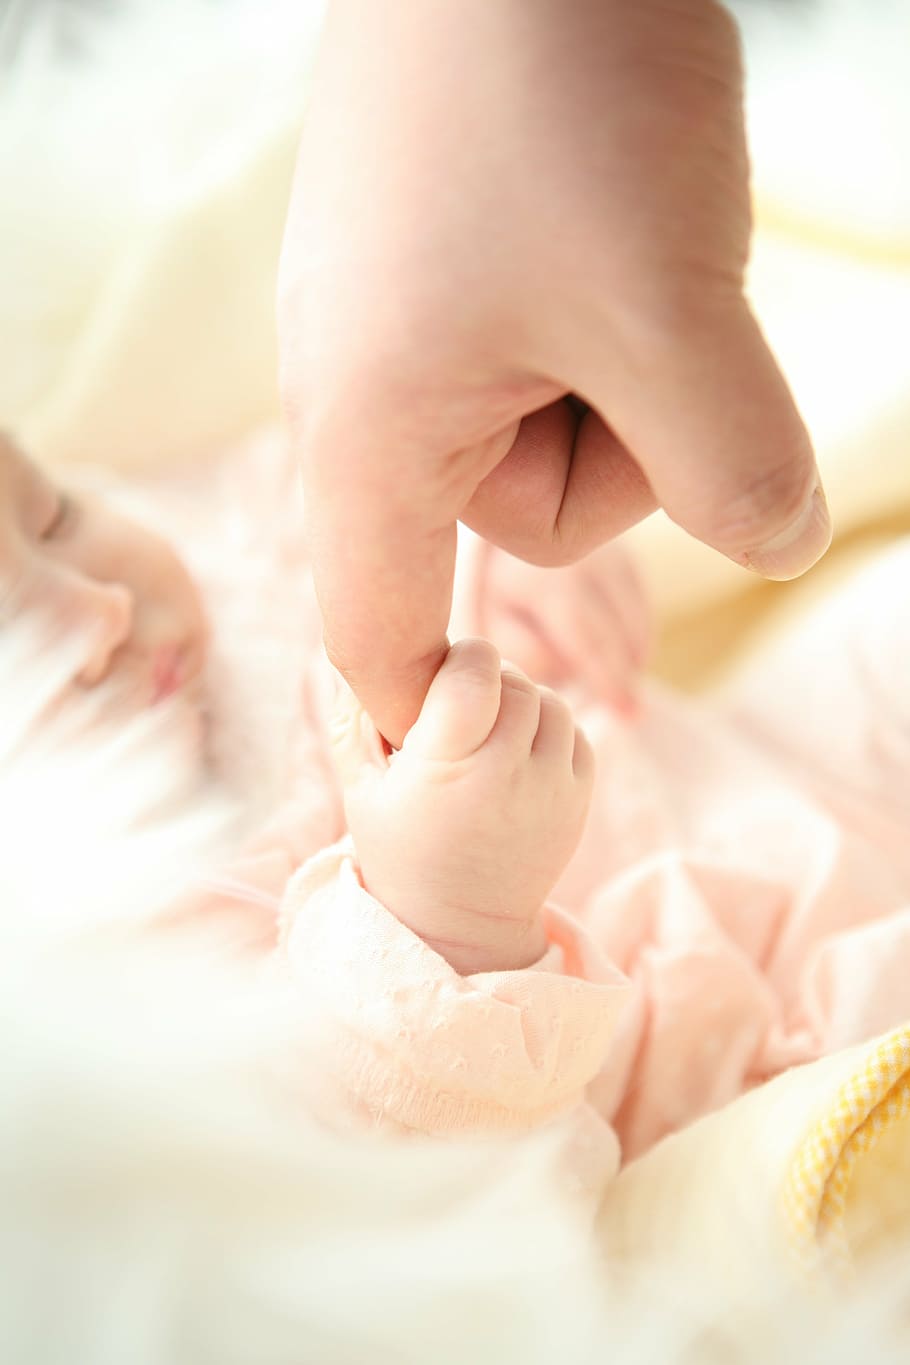 bayi, memegang, jari telunjuk, orang, tangan, ayah, anak, Tangan manusia, close-up, kecil